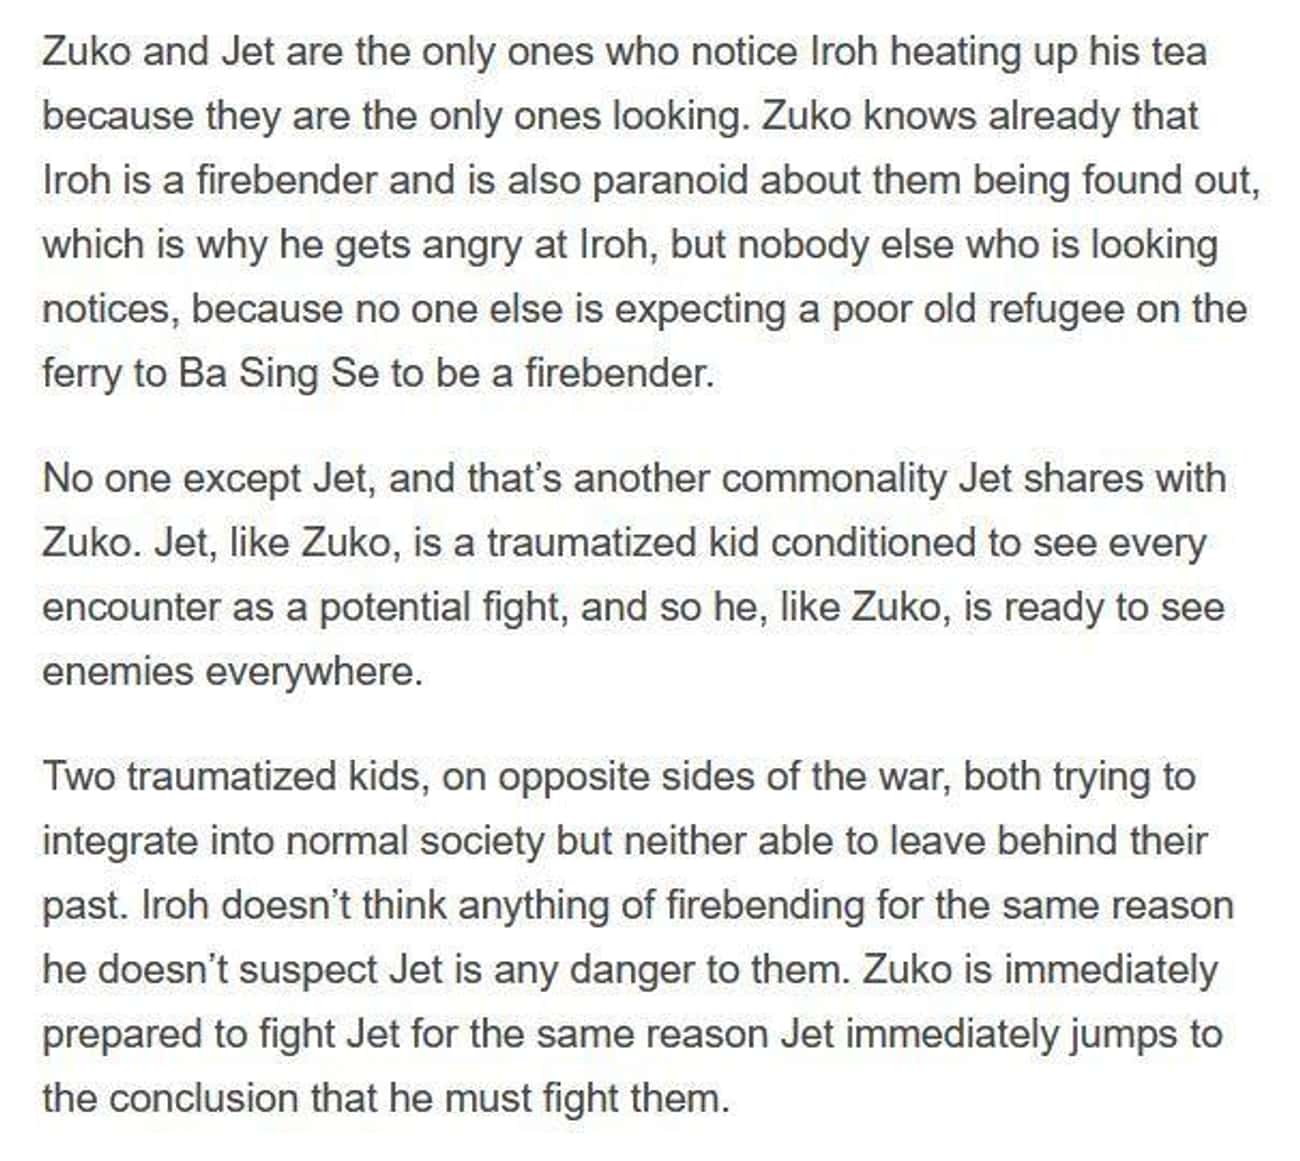 Zuko And Jet's Similarities